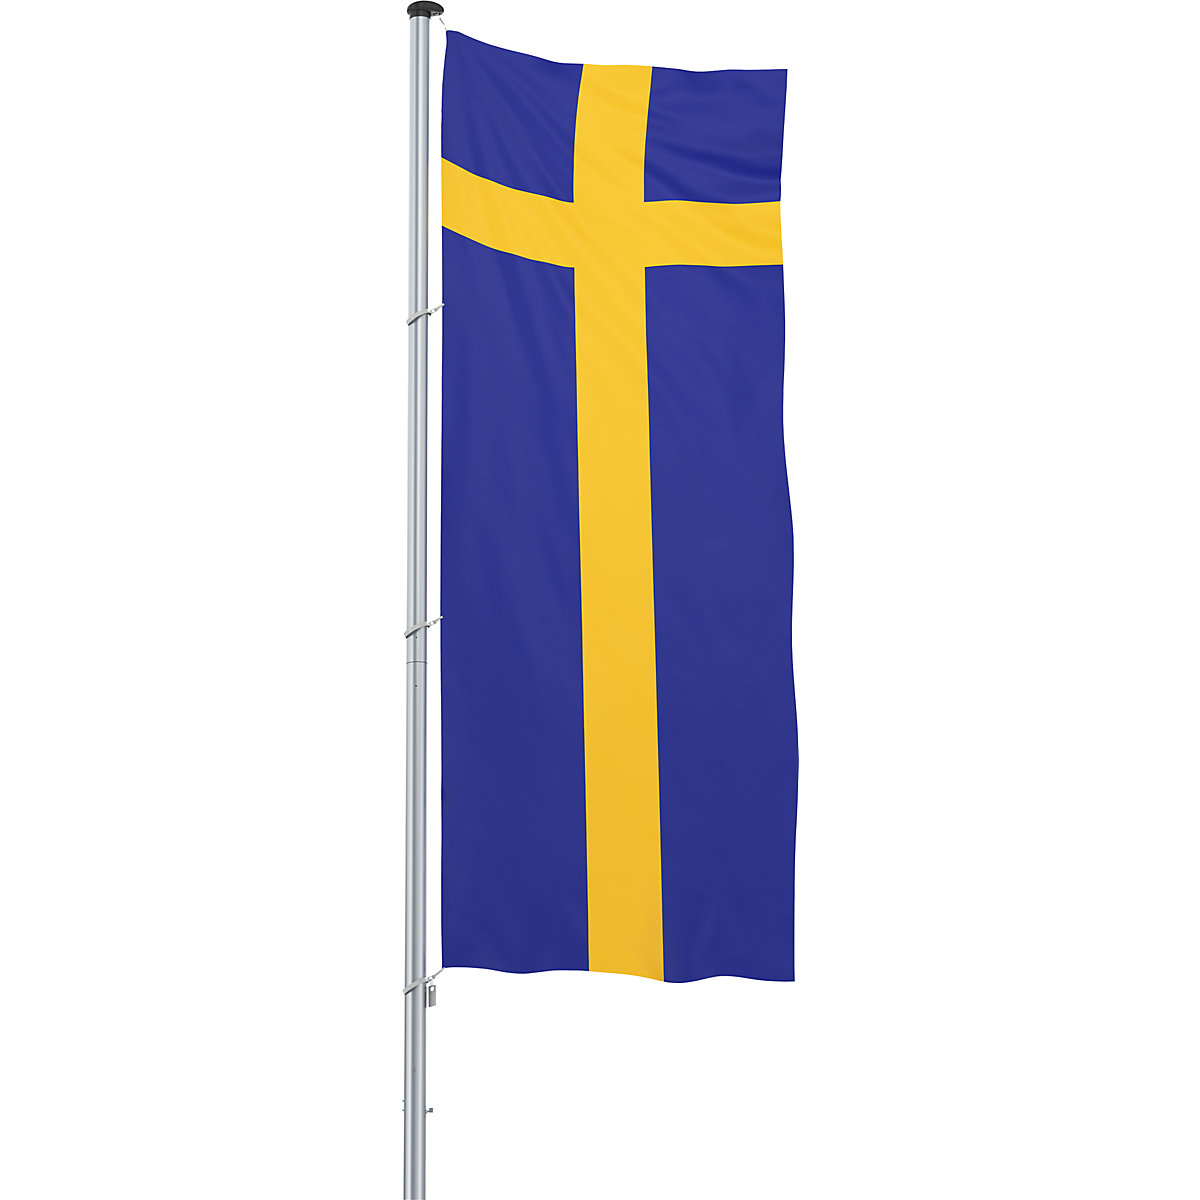 Mannus – Bandera para izar/bandera del país, formato 1,2 x 3 m, Suecia